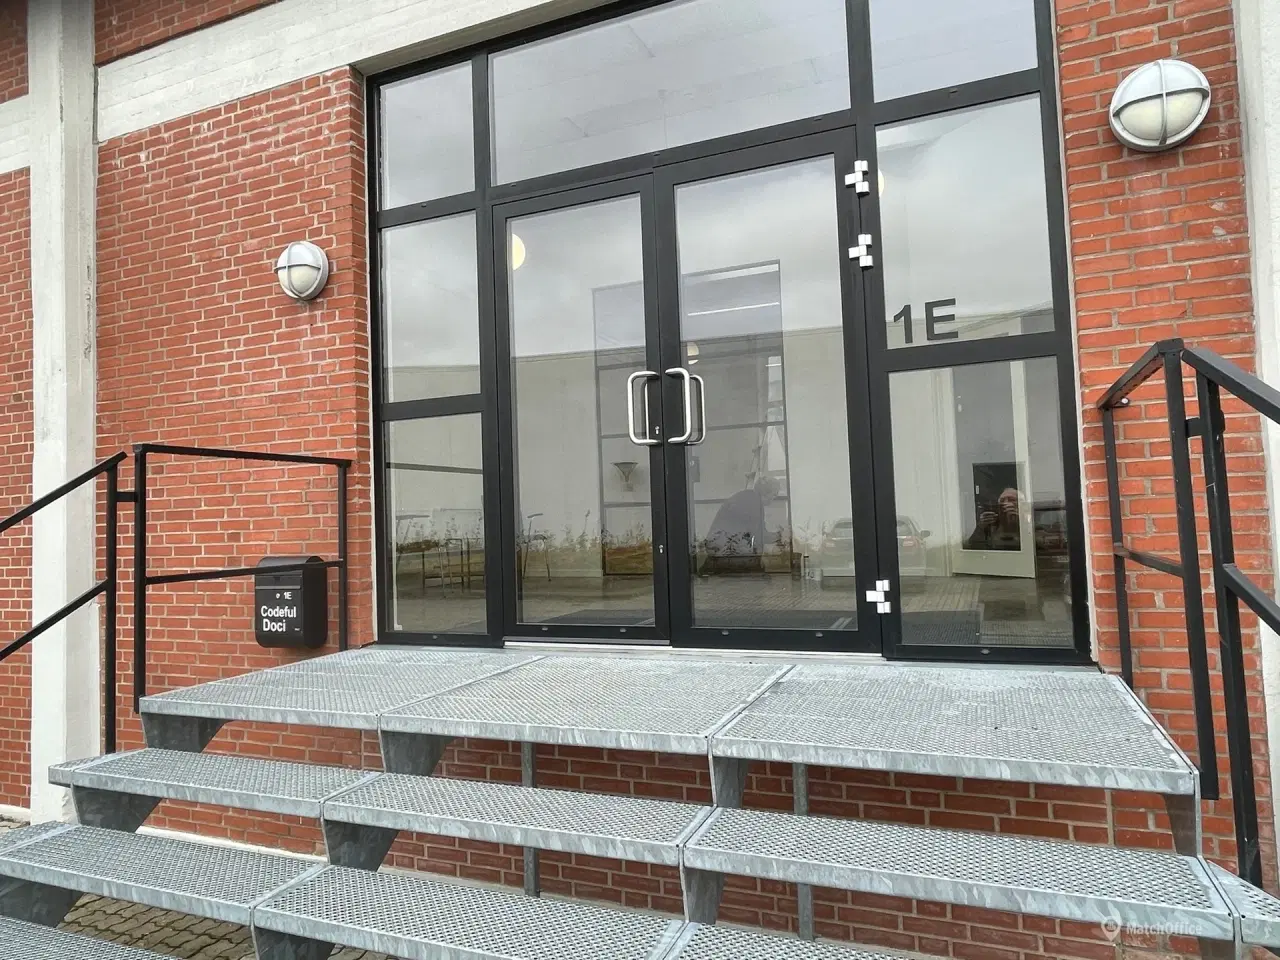 Billede 6 - Kontor til leje i Østjylland med showroommulighed.